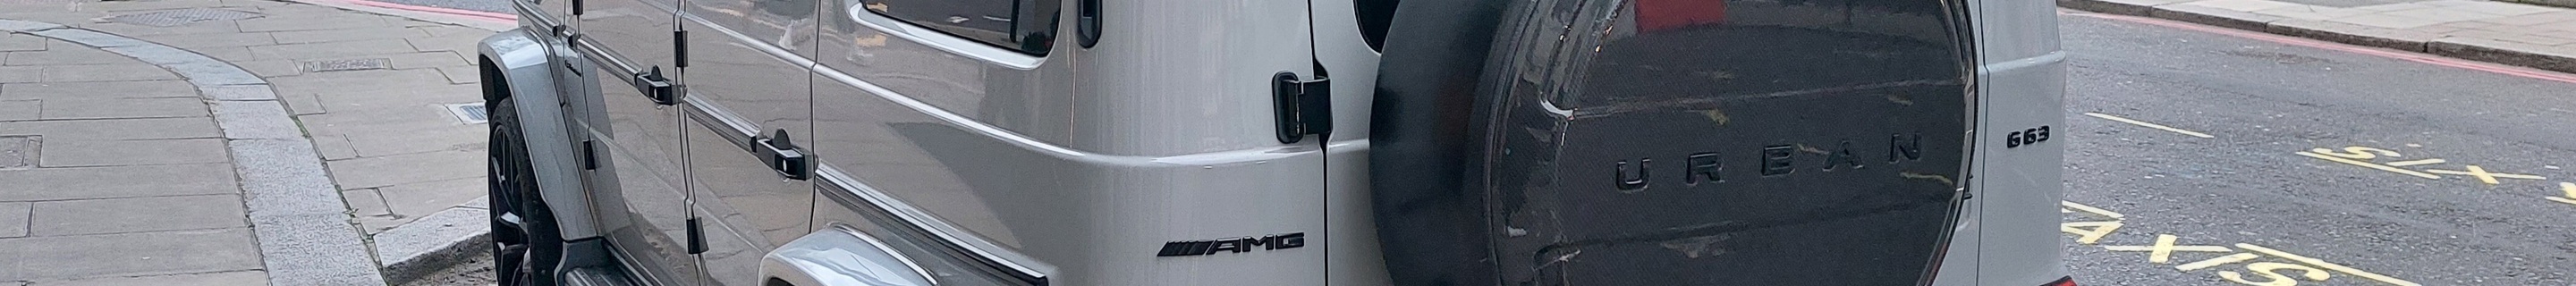 Mercedes-AMG G 63 W463 2018 Urban 700 S